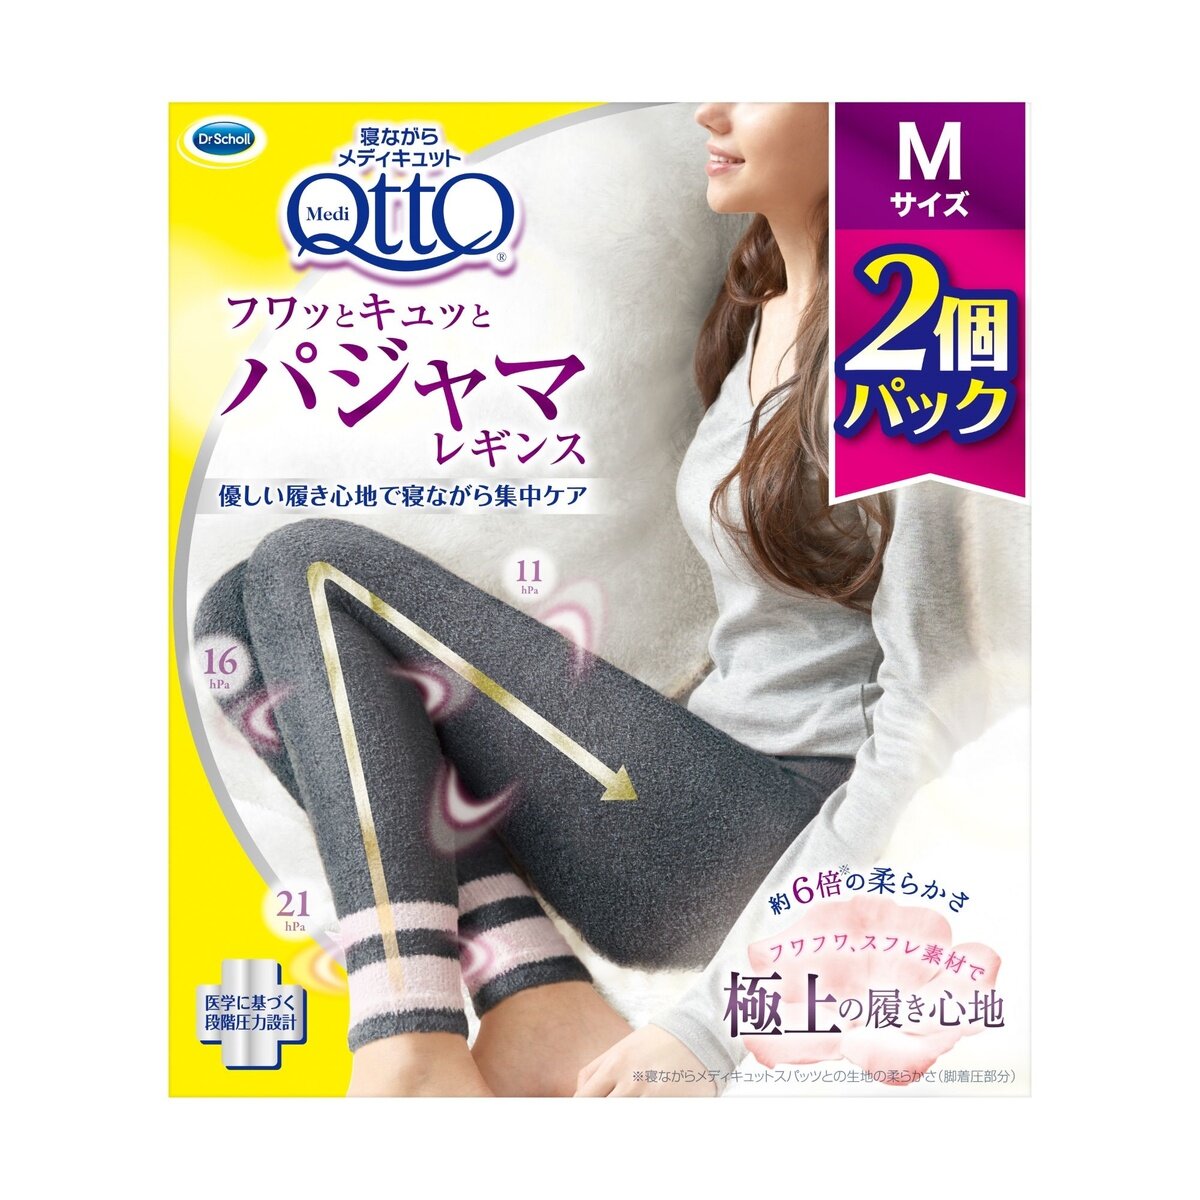 メディキュット フワっとキュッと パジャマレギンス 2 個パック | Costco Japan